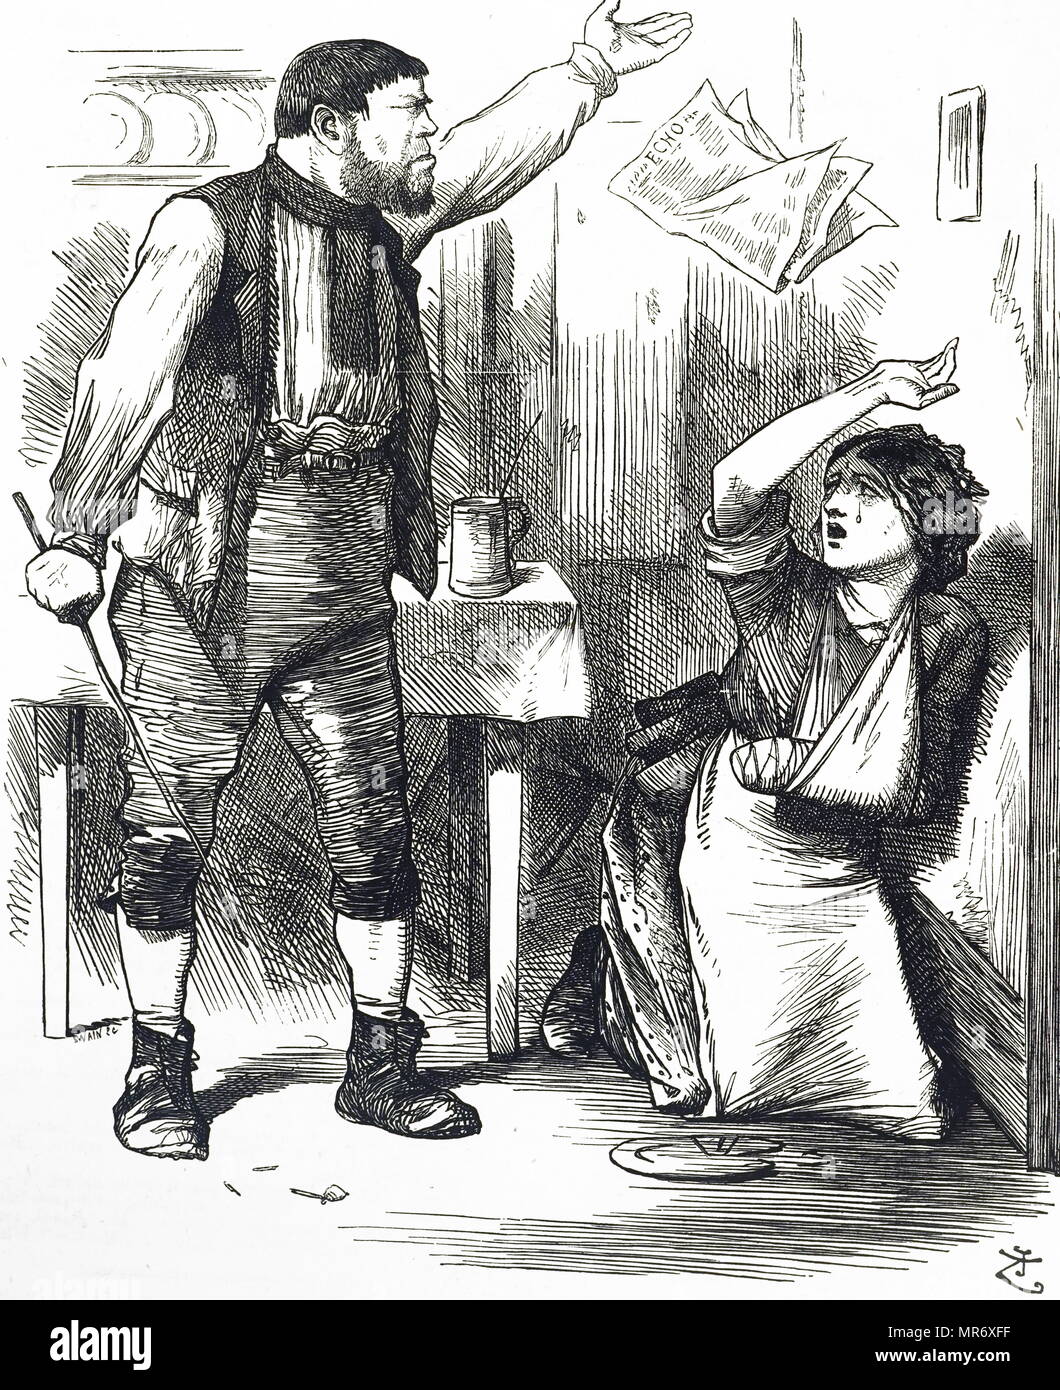 Abbildung: Darstellung einer gewalttätigen Ehemann, der seine Frau schlägt. Illustriert von John Tenniel (1820-1914) ein englischer Illustrator Grafik Humorist und politischen Karikaturisten. Vom 19. Jahrhundert Stockfoto